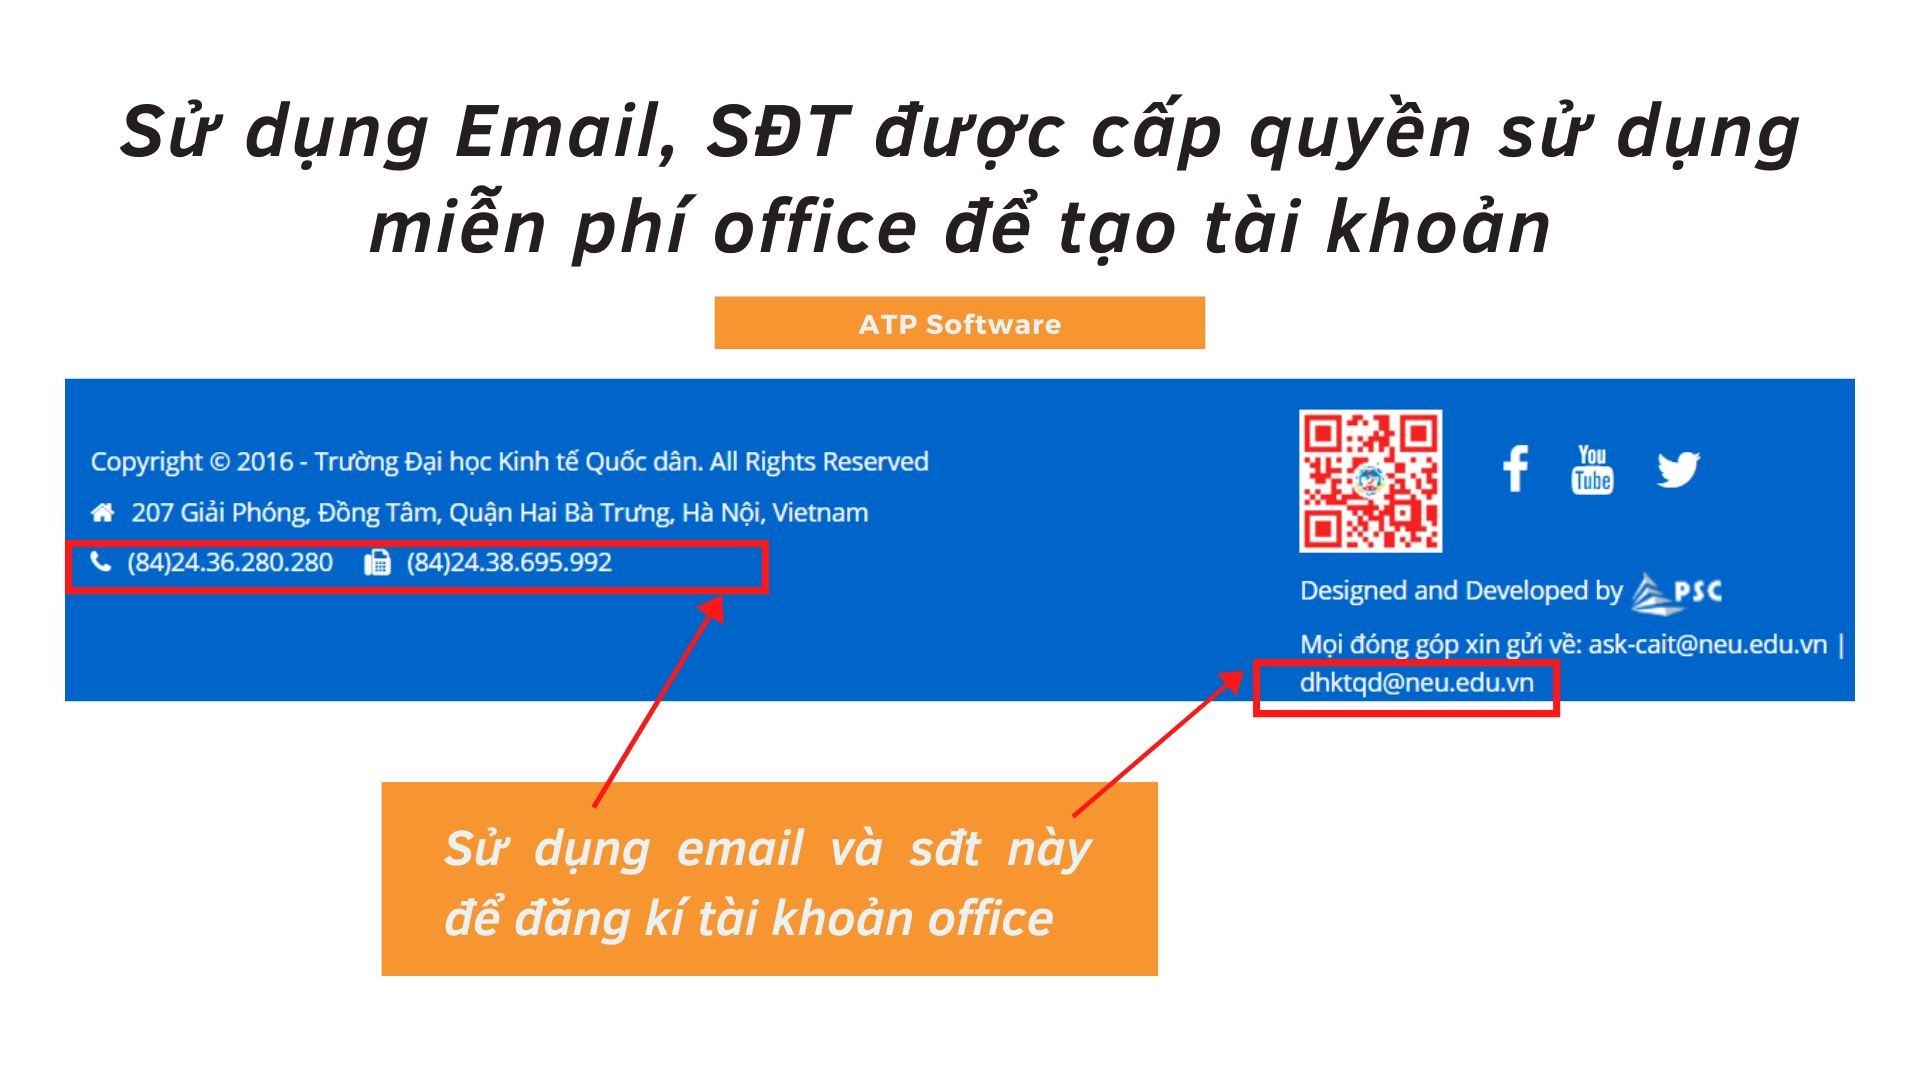 Sử dụng email và sđt để đăng kí tài khoản office